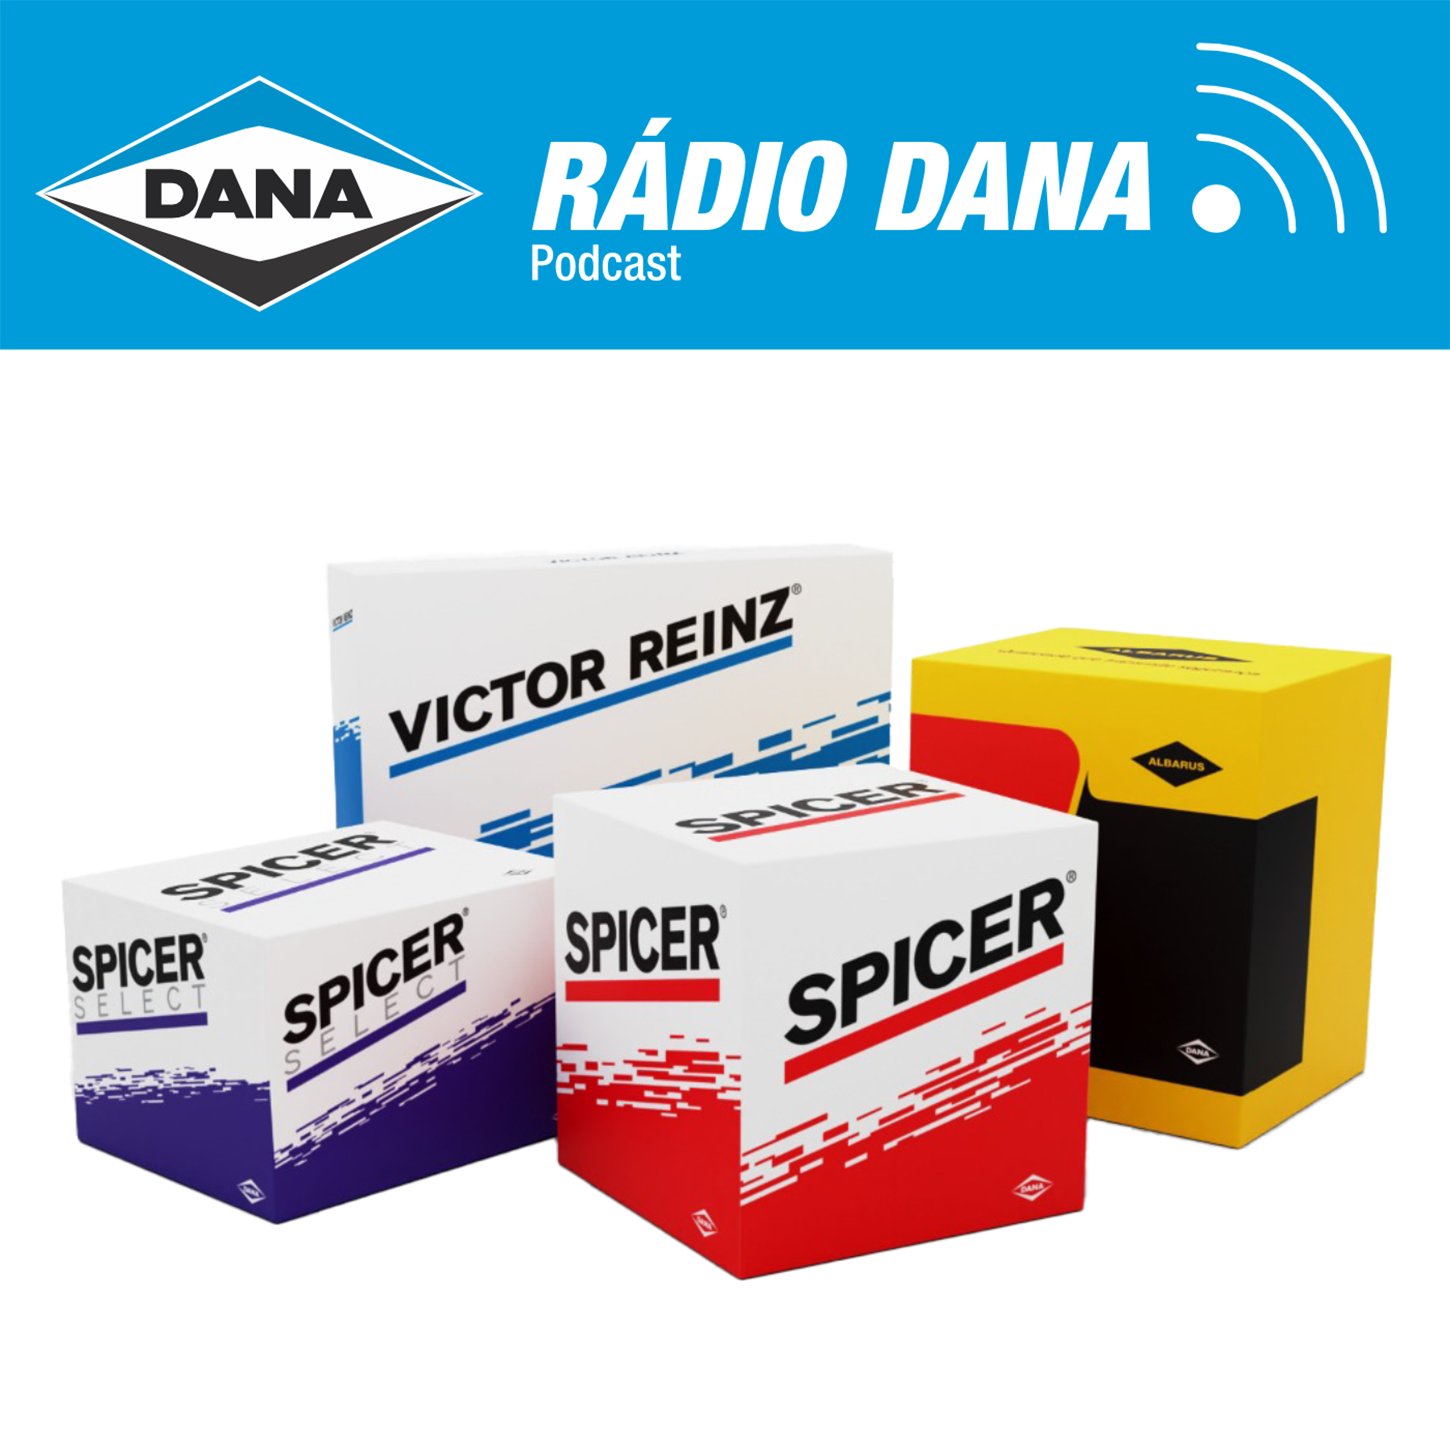 Episódio 115 - Rádio Dana - Sintonizada com os Clientes